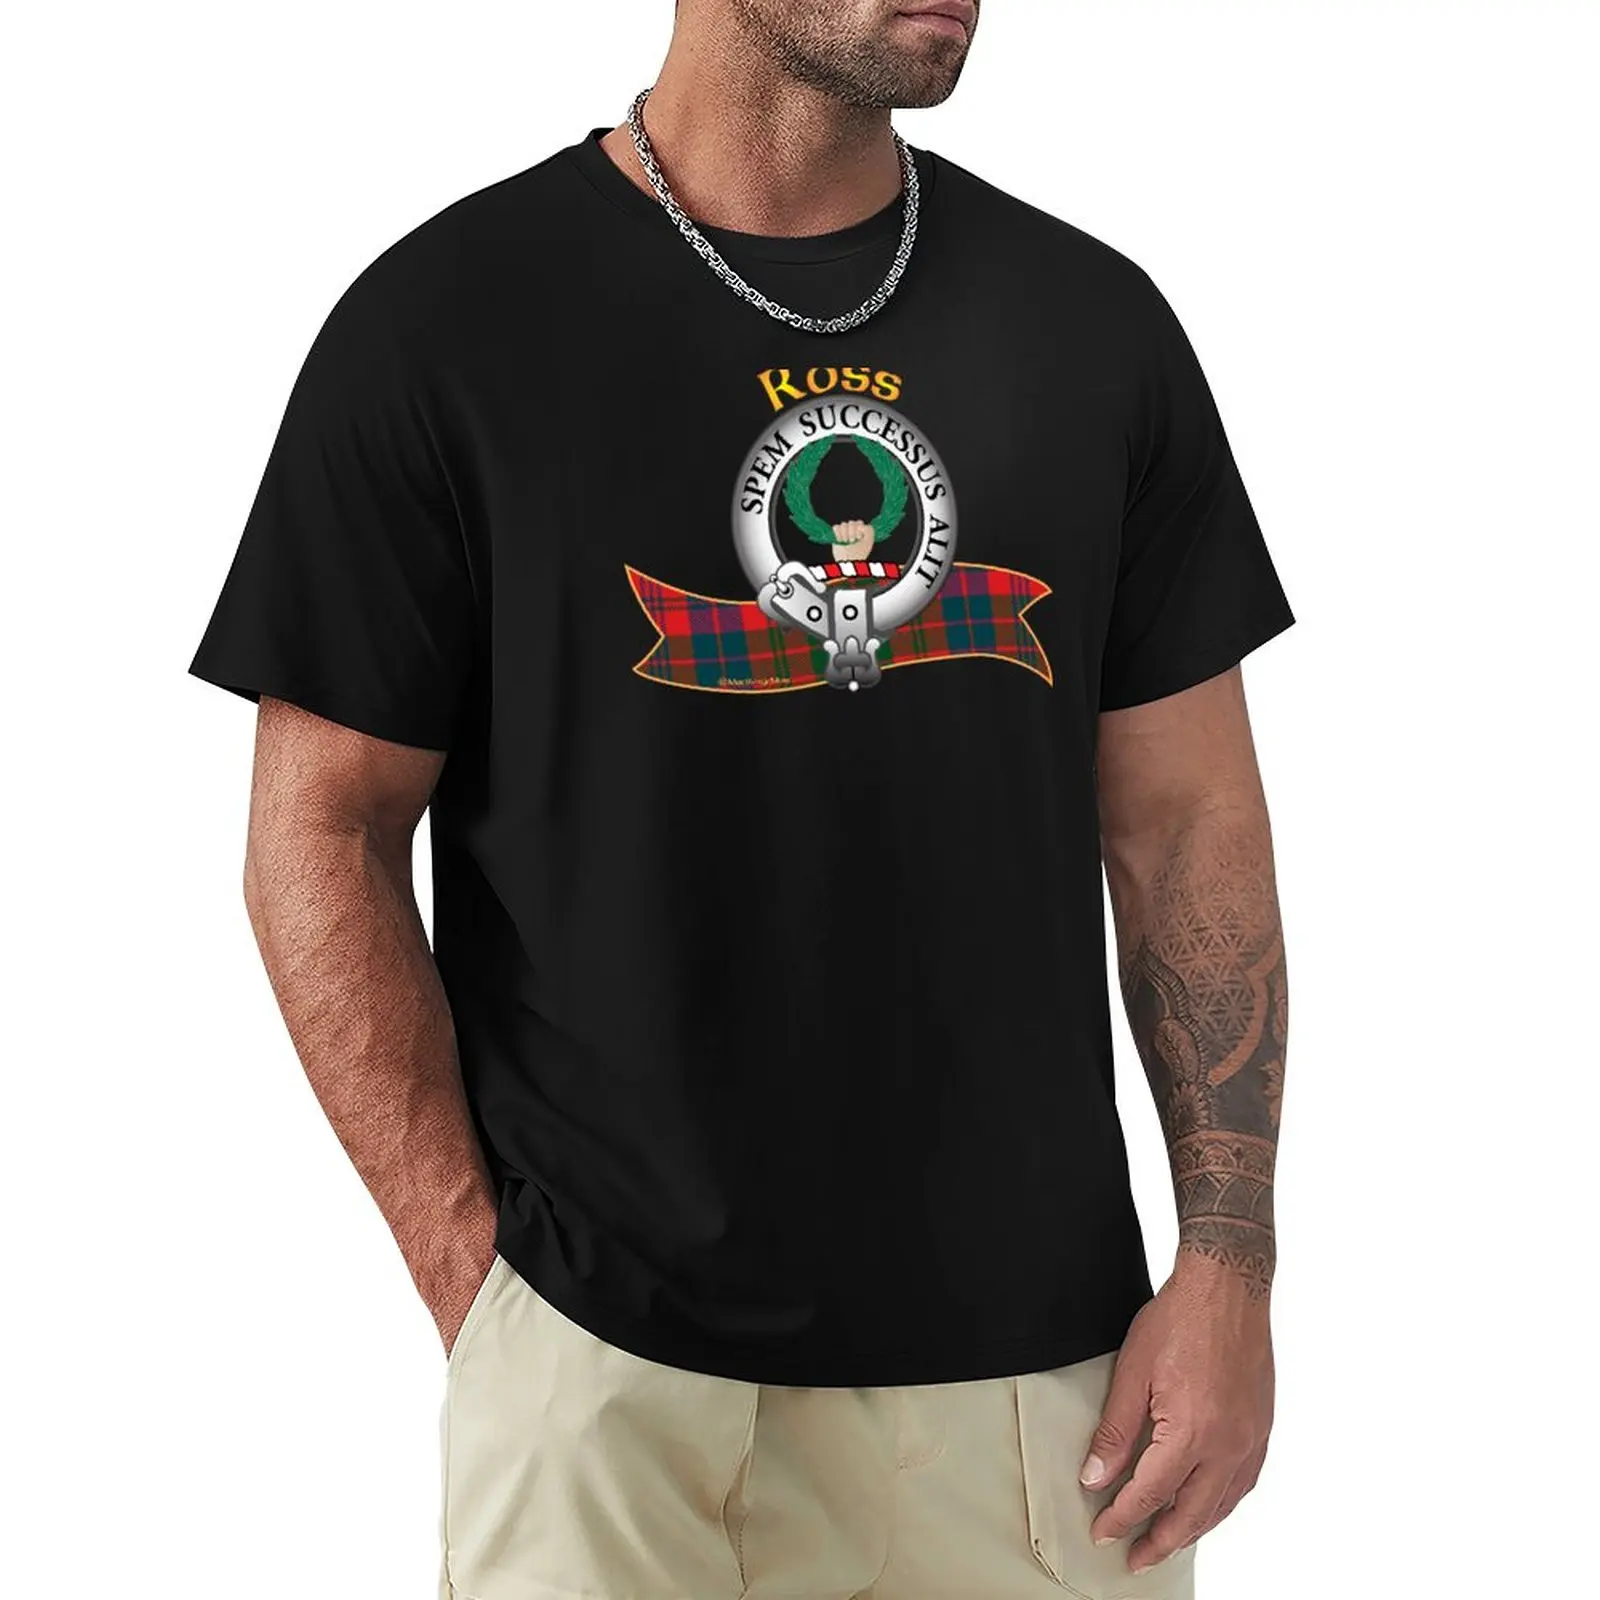 Ross Clã T-Shirt personalizada t-shirts projetar seu próprio gráfico t-shirt de secagem rápida camisa slim fit t-shirts para os homens